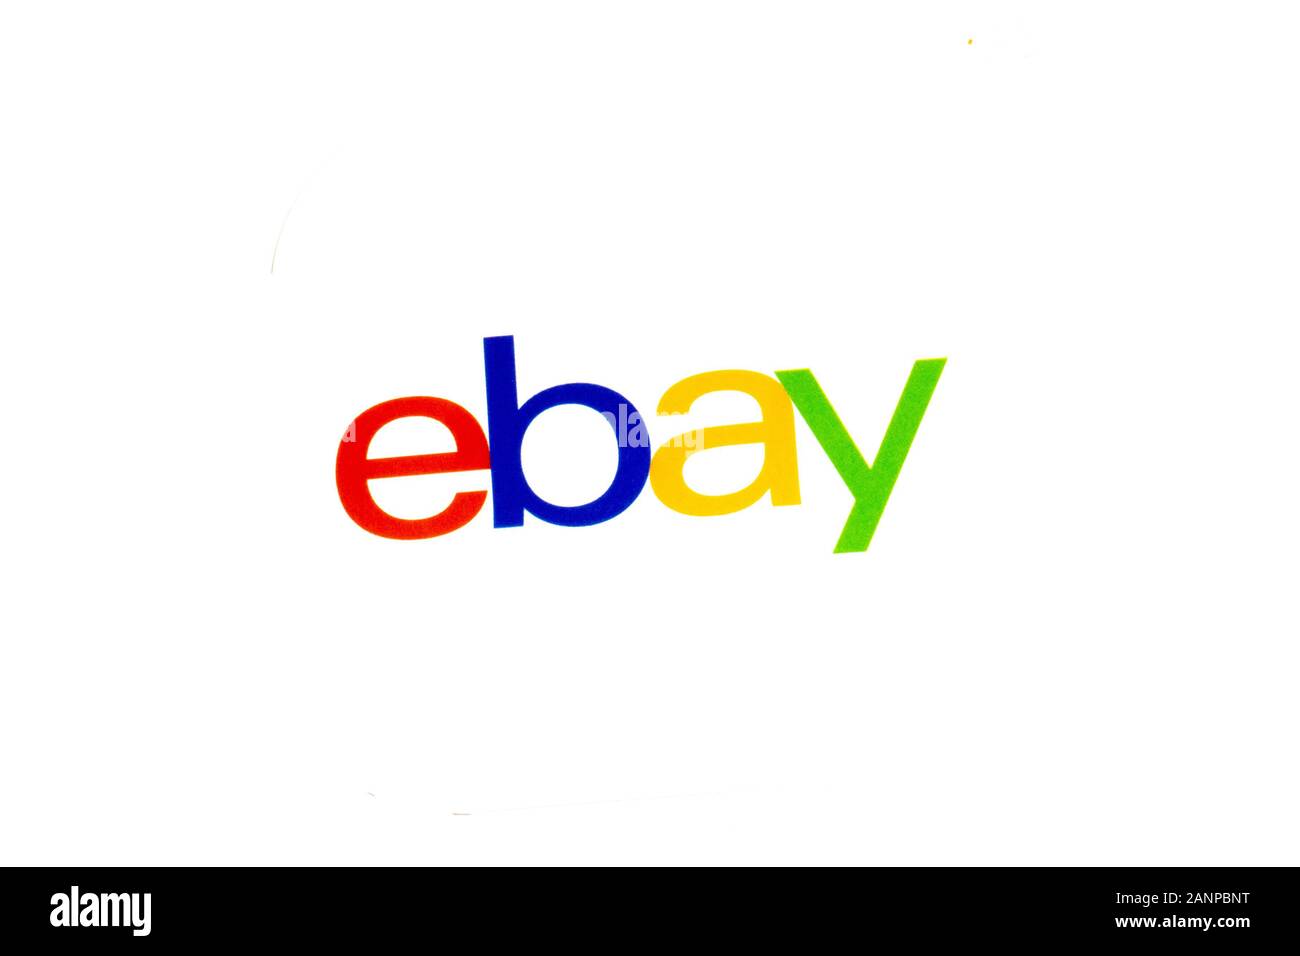 Los Angeles, Californie, États-Unis - 17 janvier 2020: EBay logo shopping sur fond blanc, éditorial illustratif Banque D'Images